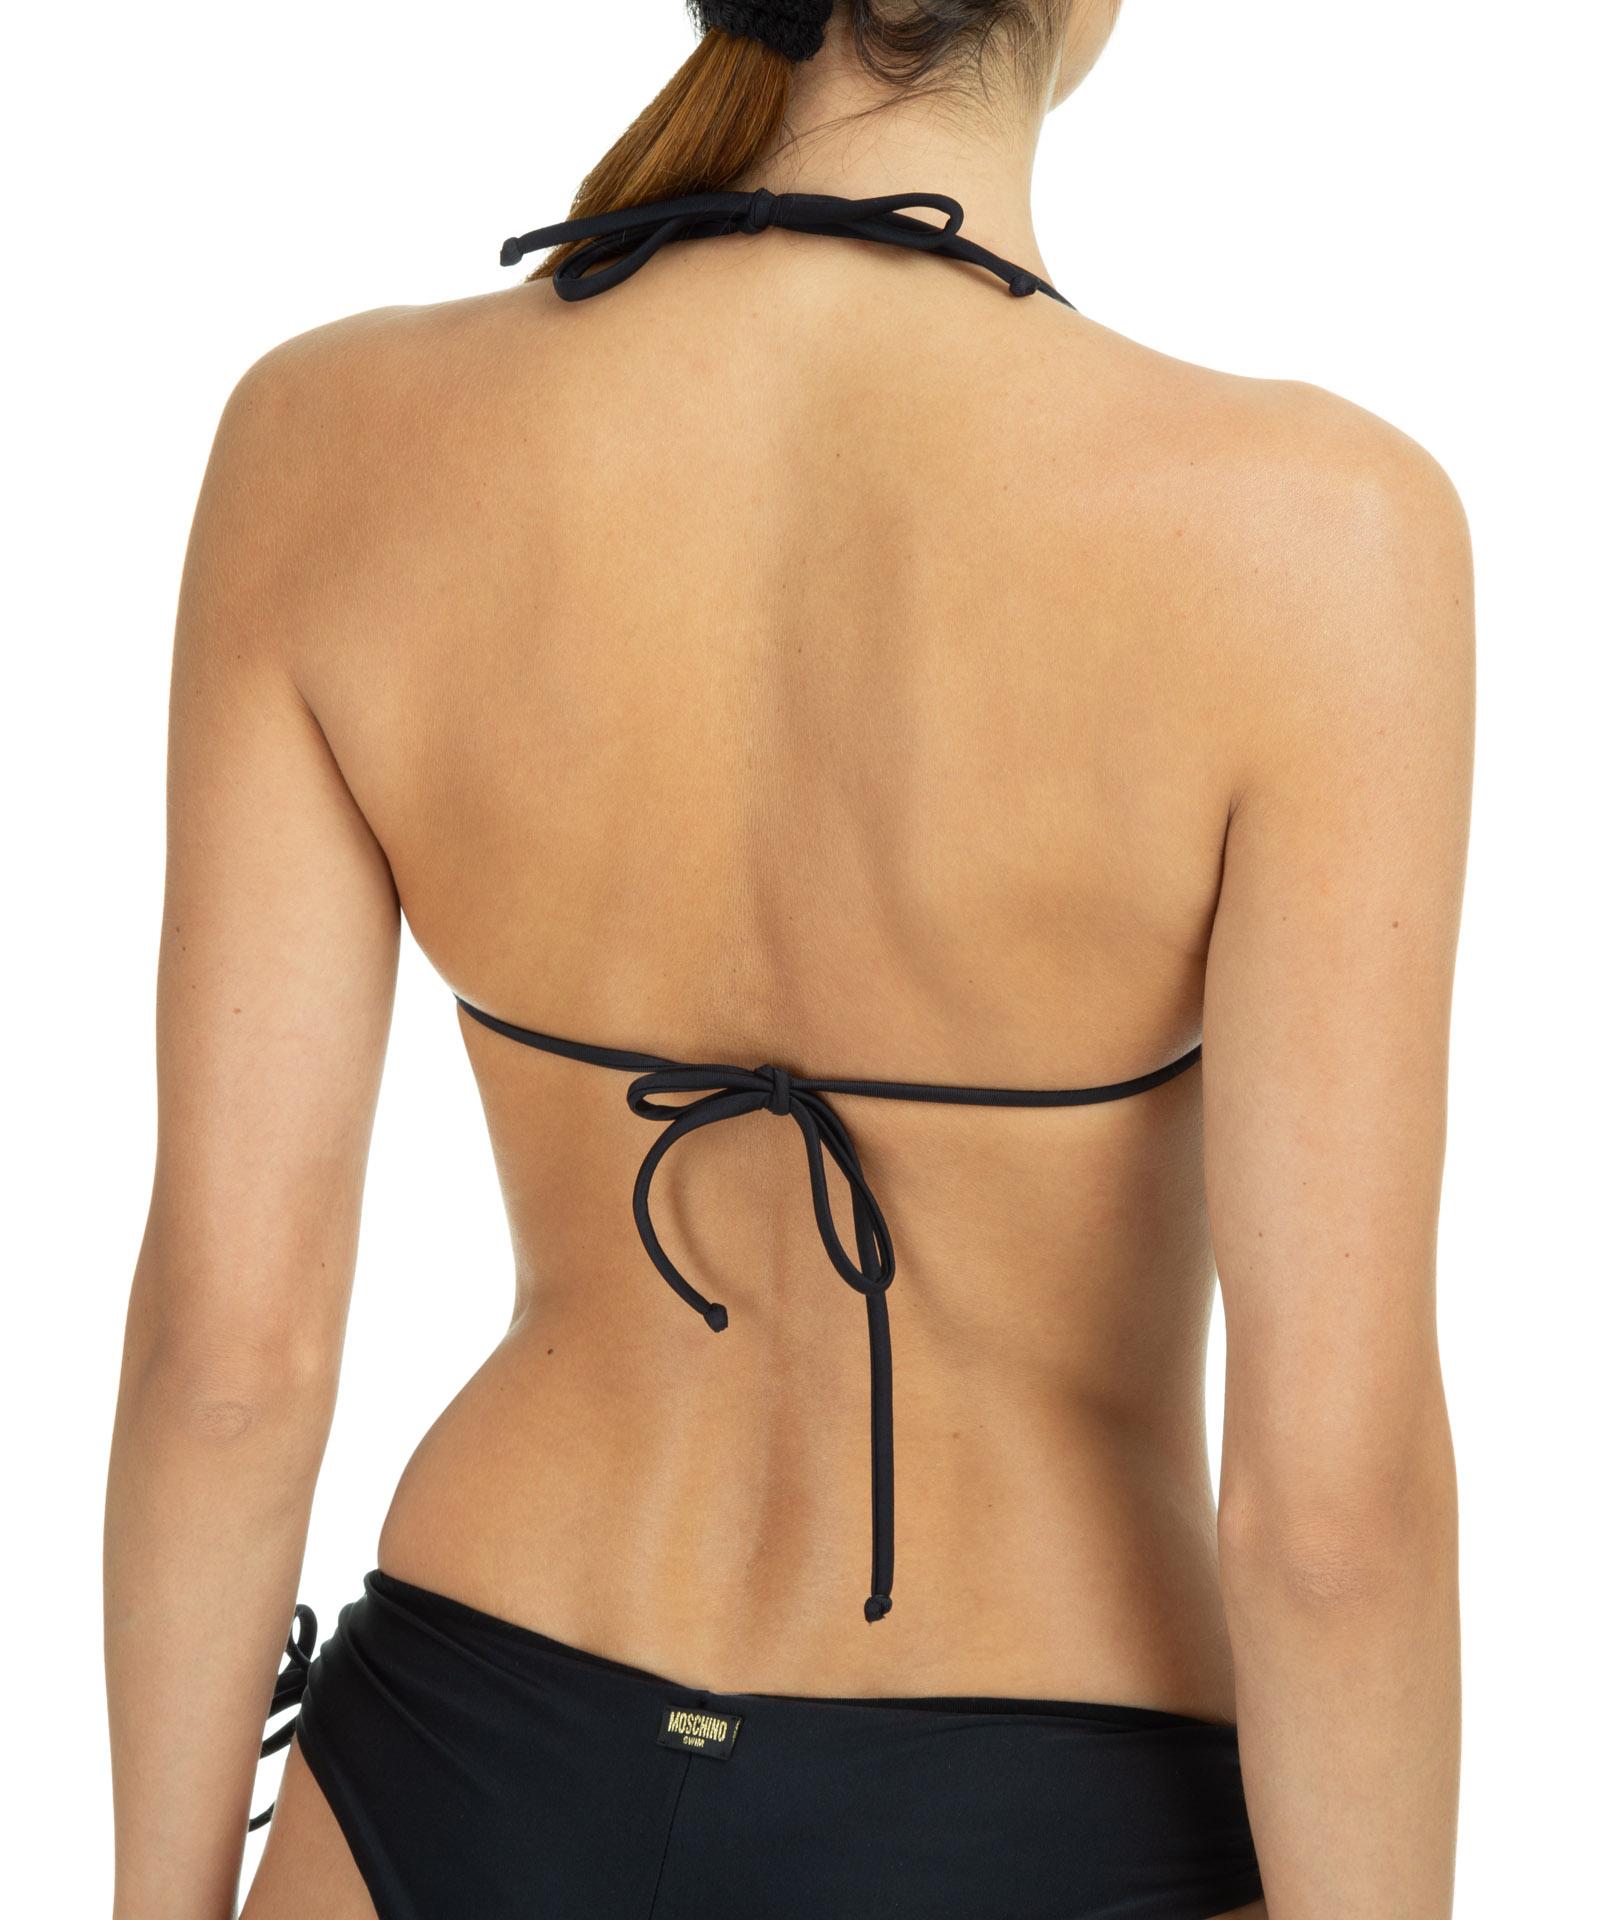 Moschino Big M Buckle Bikini Top in Black | Lyst